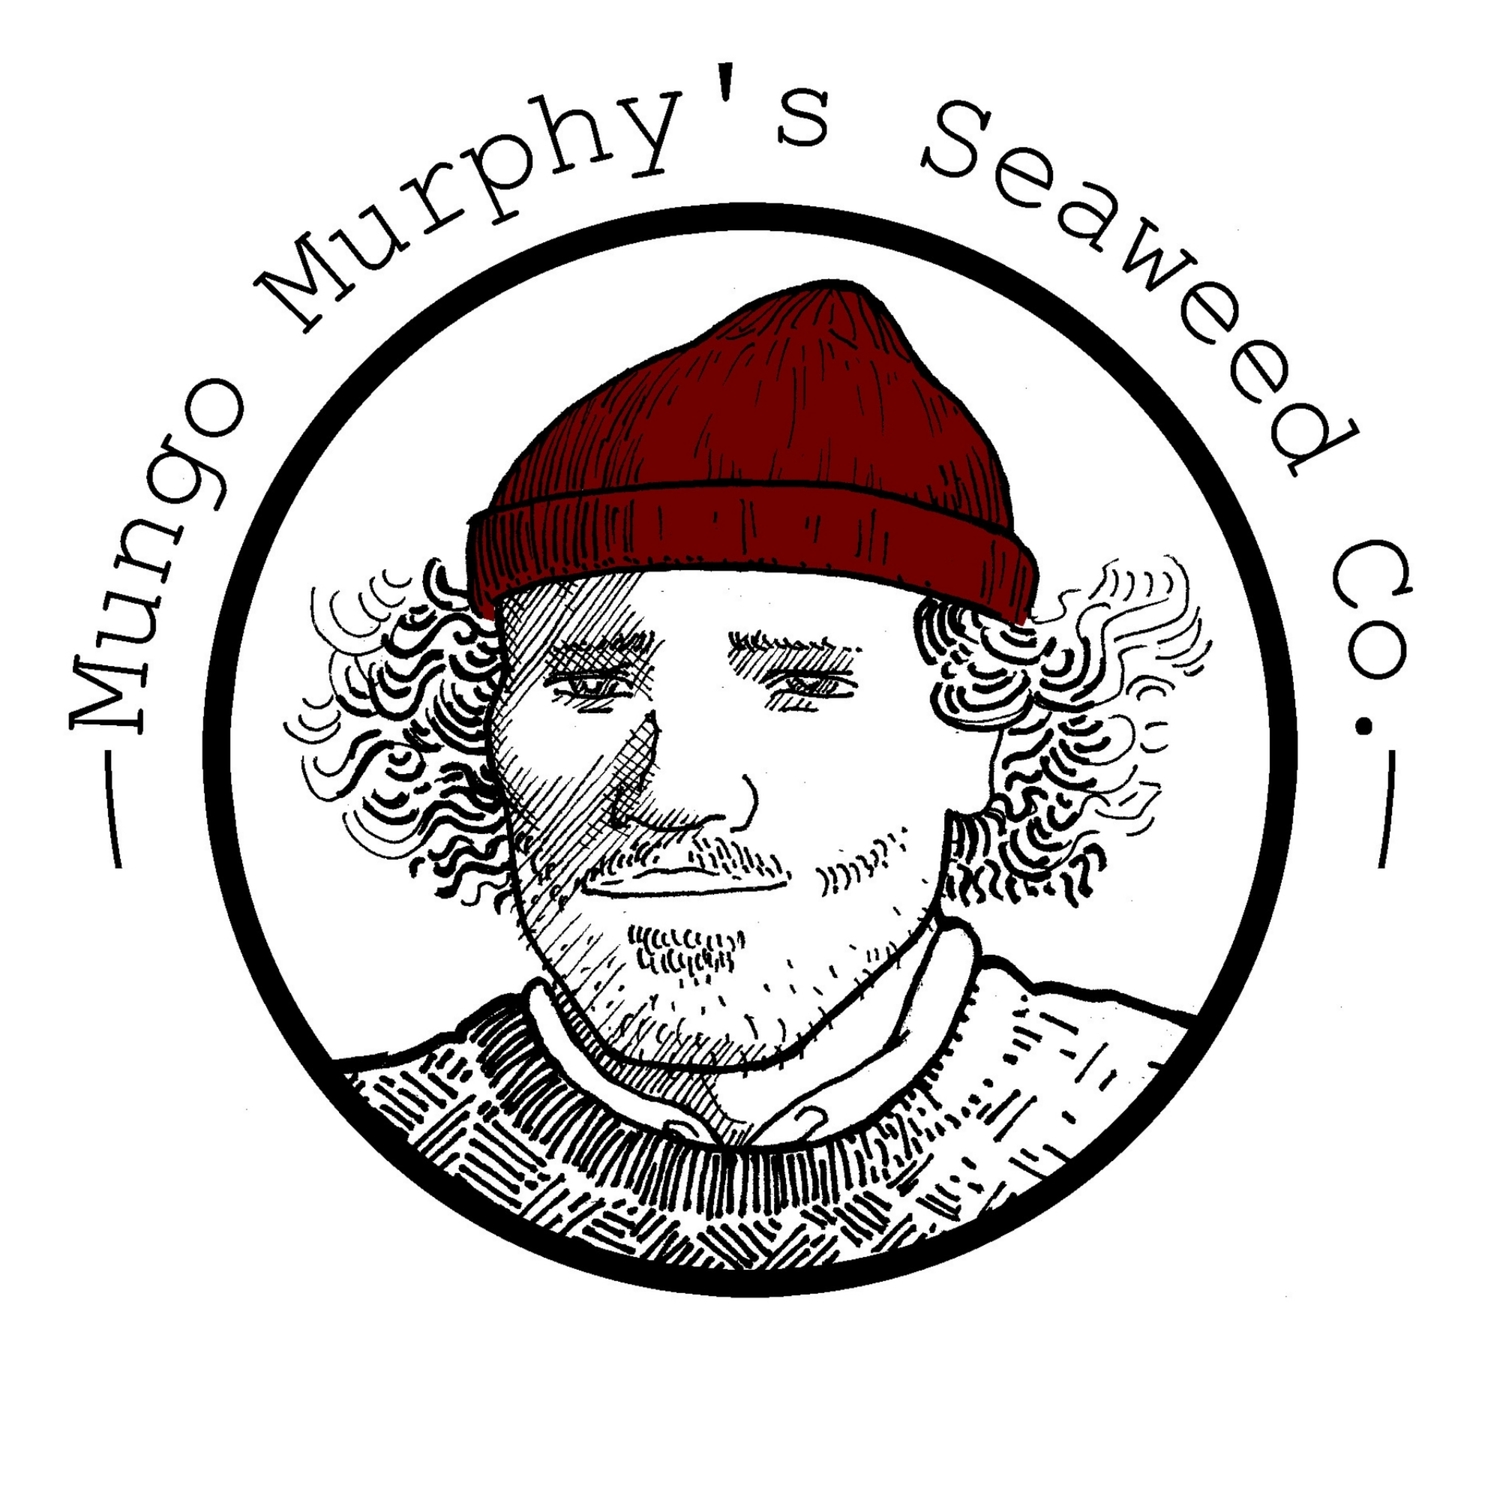 Mungo Murphy's Seaweed Co.